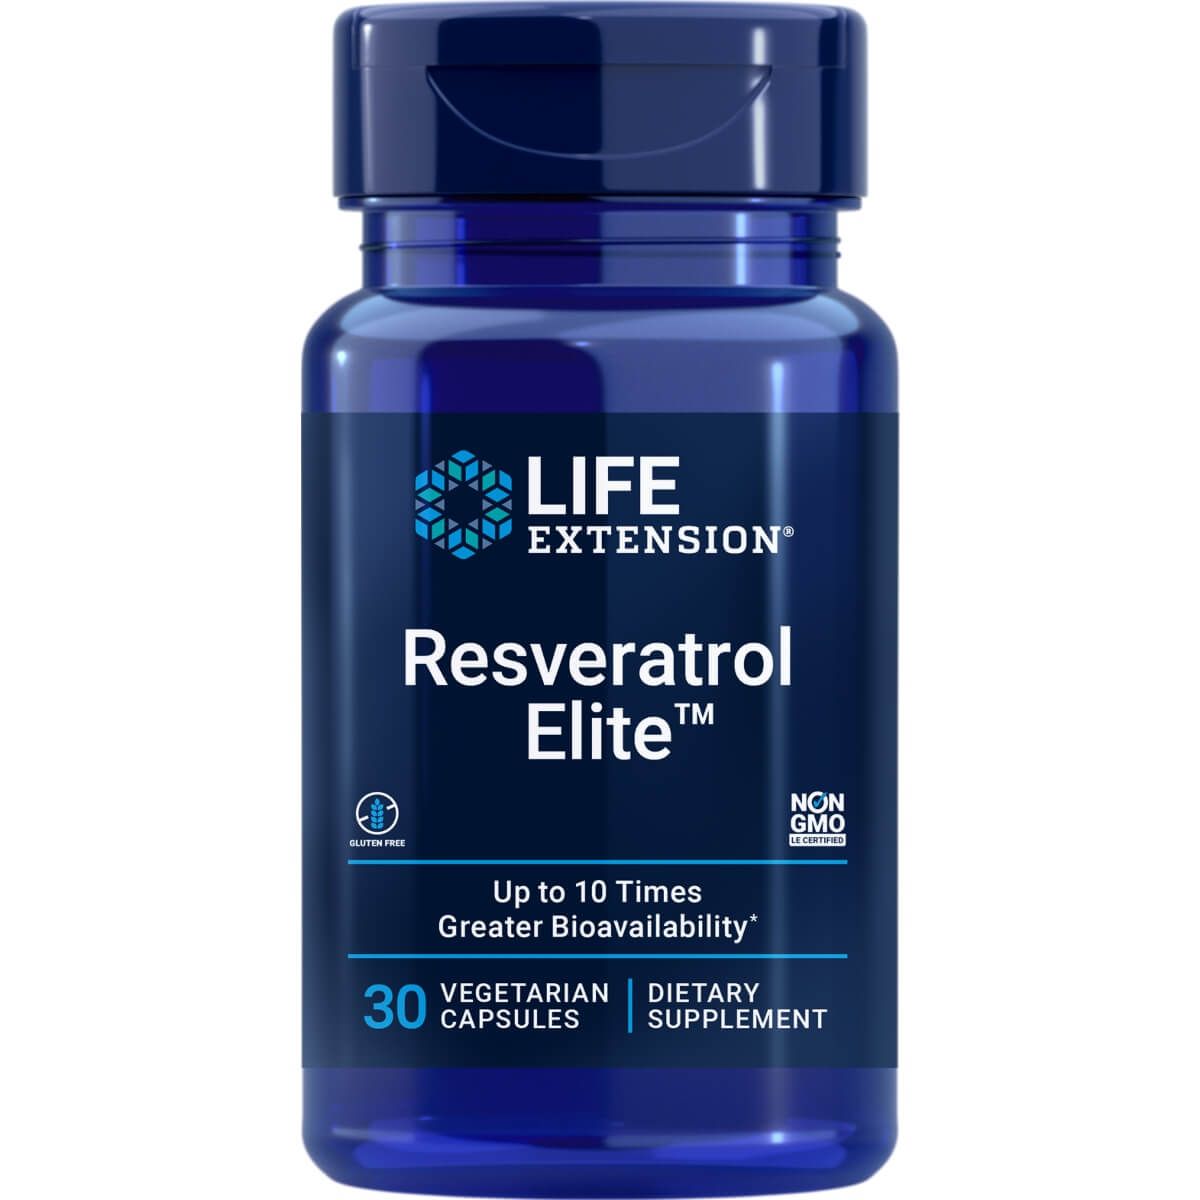 Photos - Vitamins & Minerals Life Extension Resveratrol Elite 30 Vegetarian Capsules PBW-P35821 